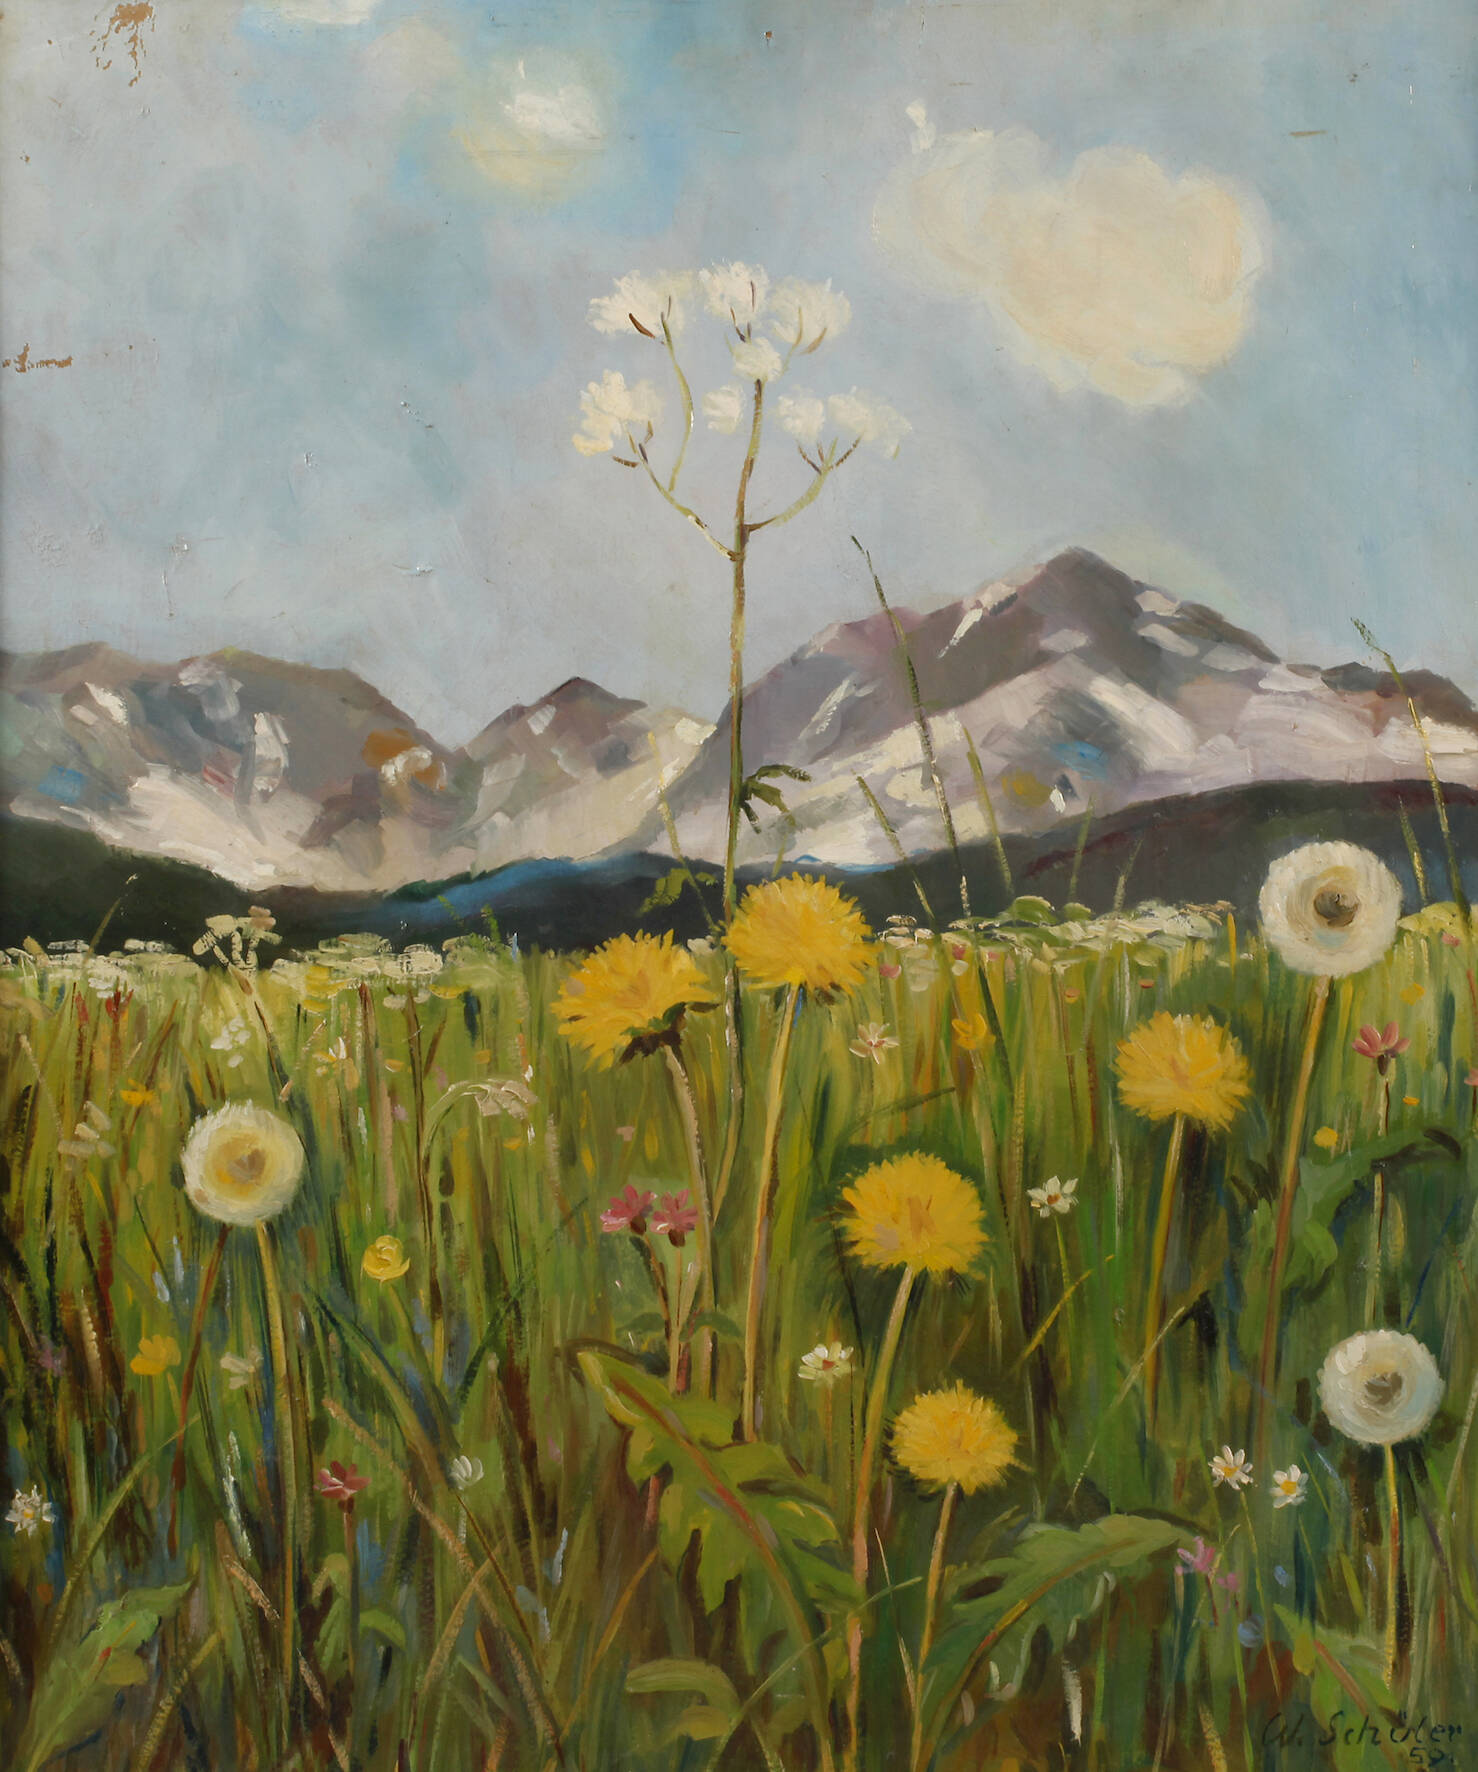 Willy Schüler, "Blumenwiese im Gebirge"